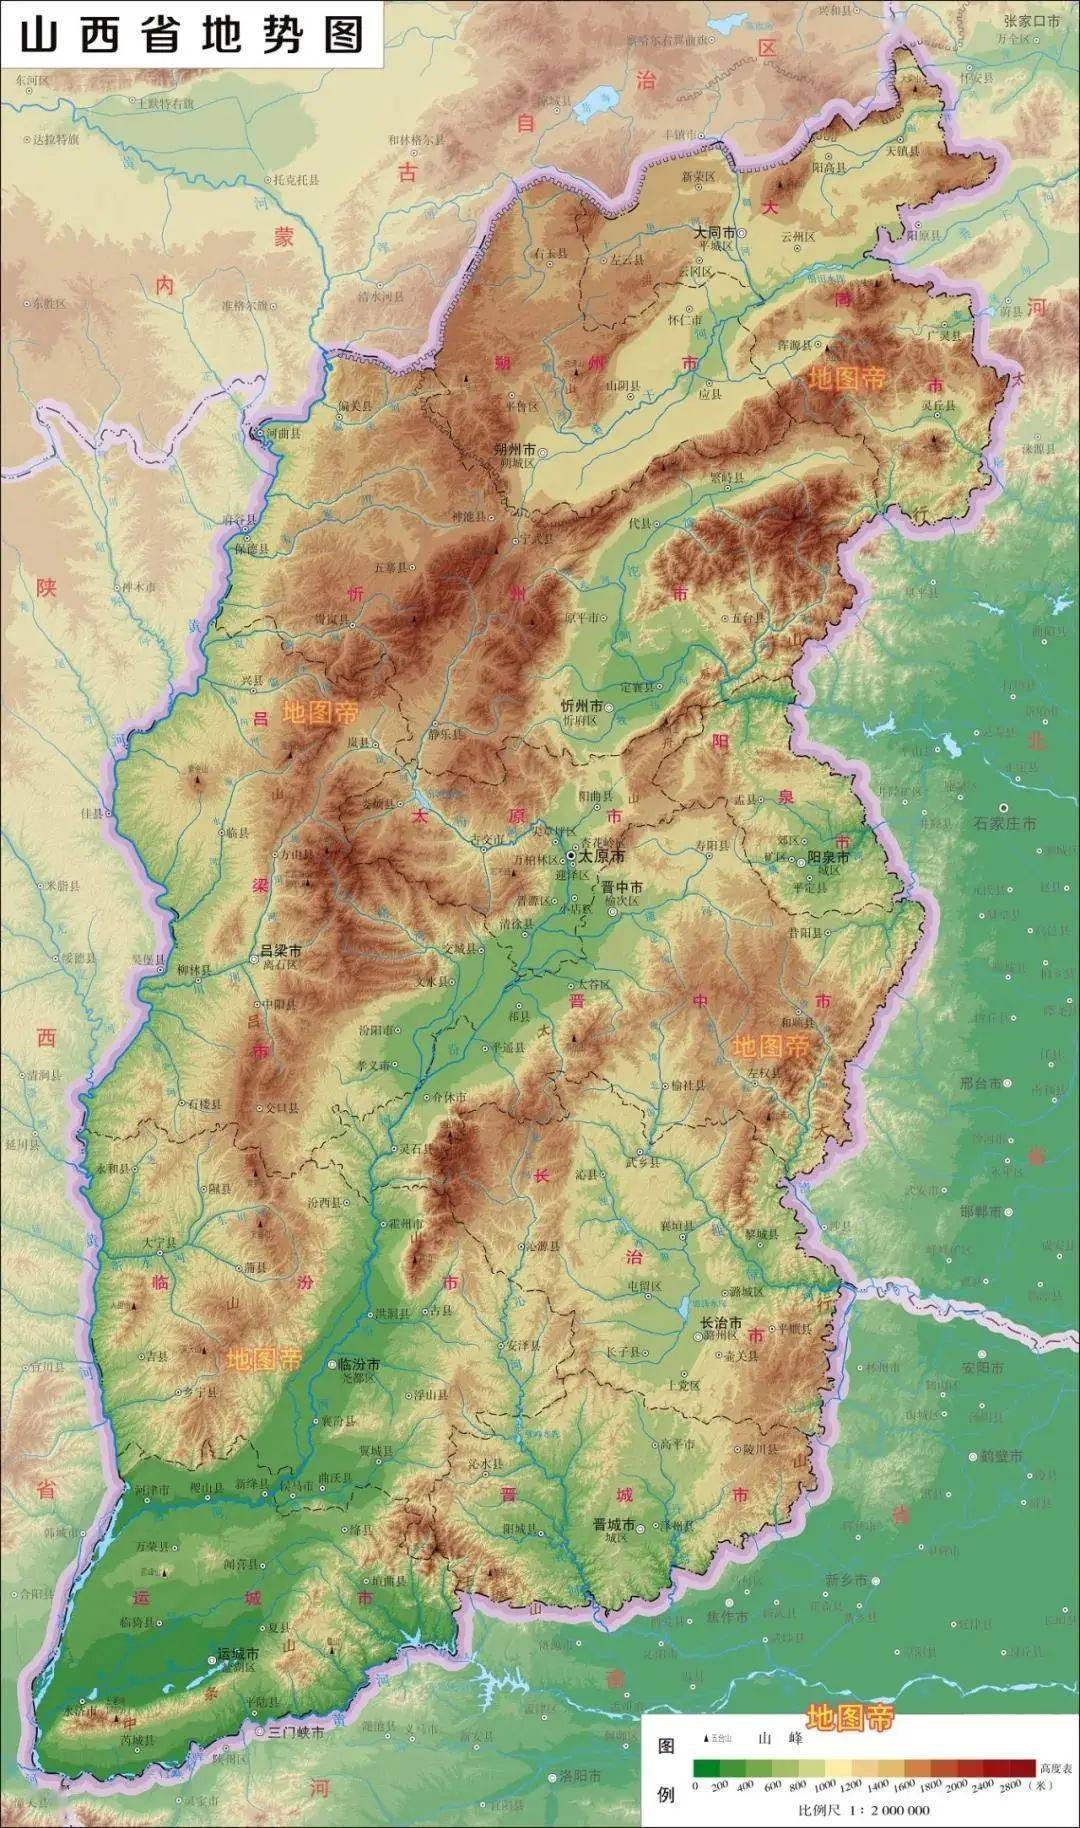 山西省的地势是中间低,两边高,西部和东部分别是吕梁山,太行山,中间是